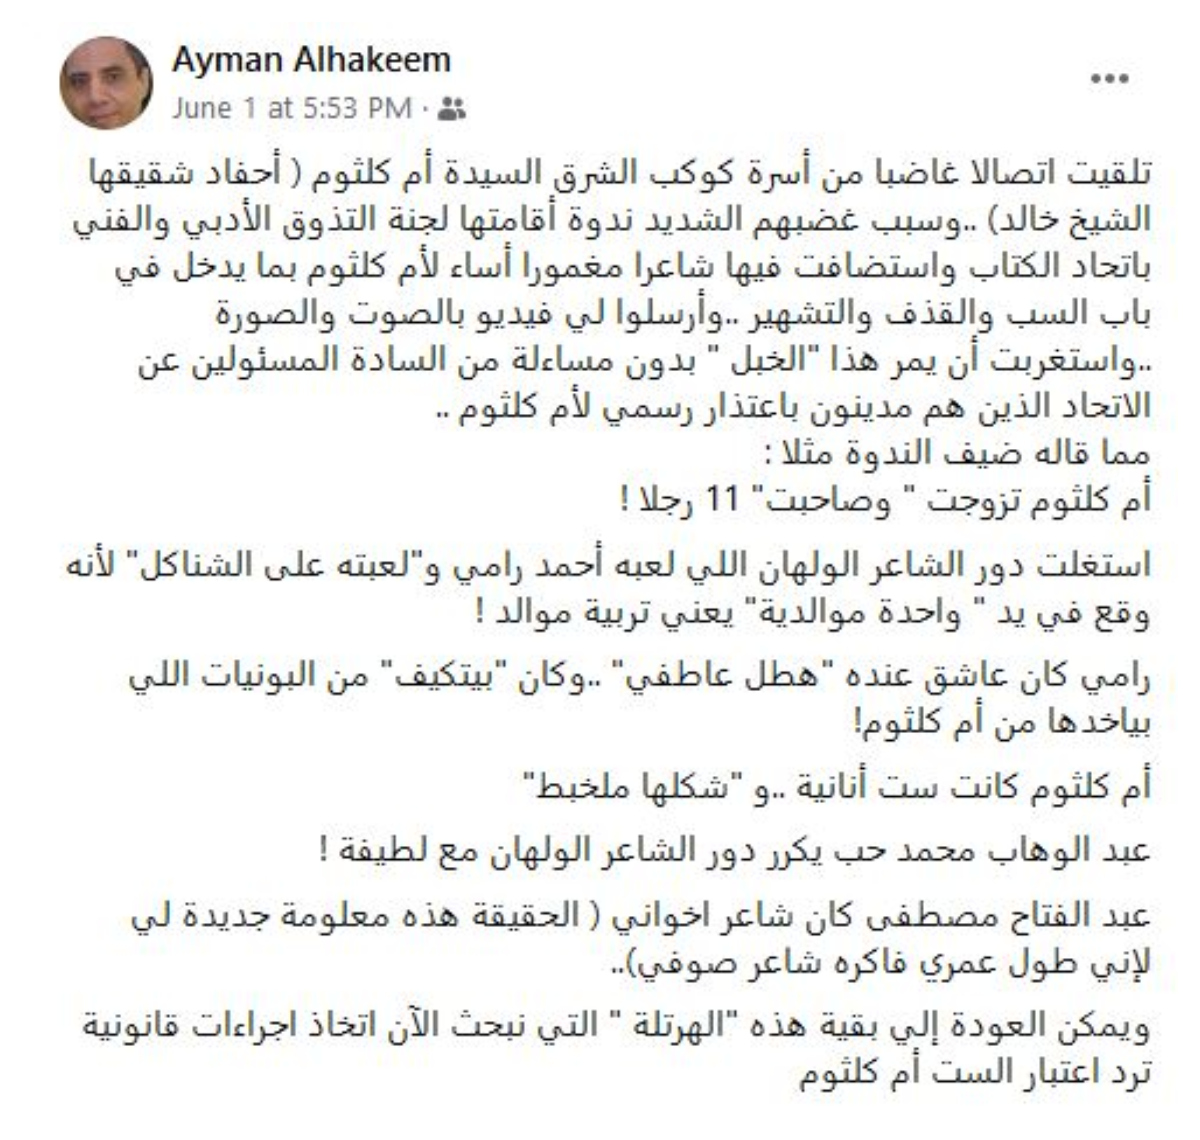 الكاتب الصحفي أيمن الحكيم يلقي الضوء على أزمة أم كلثوم